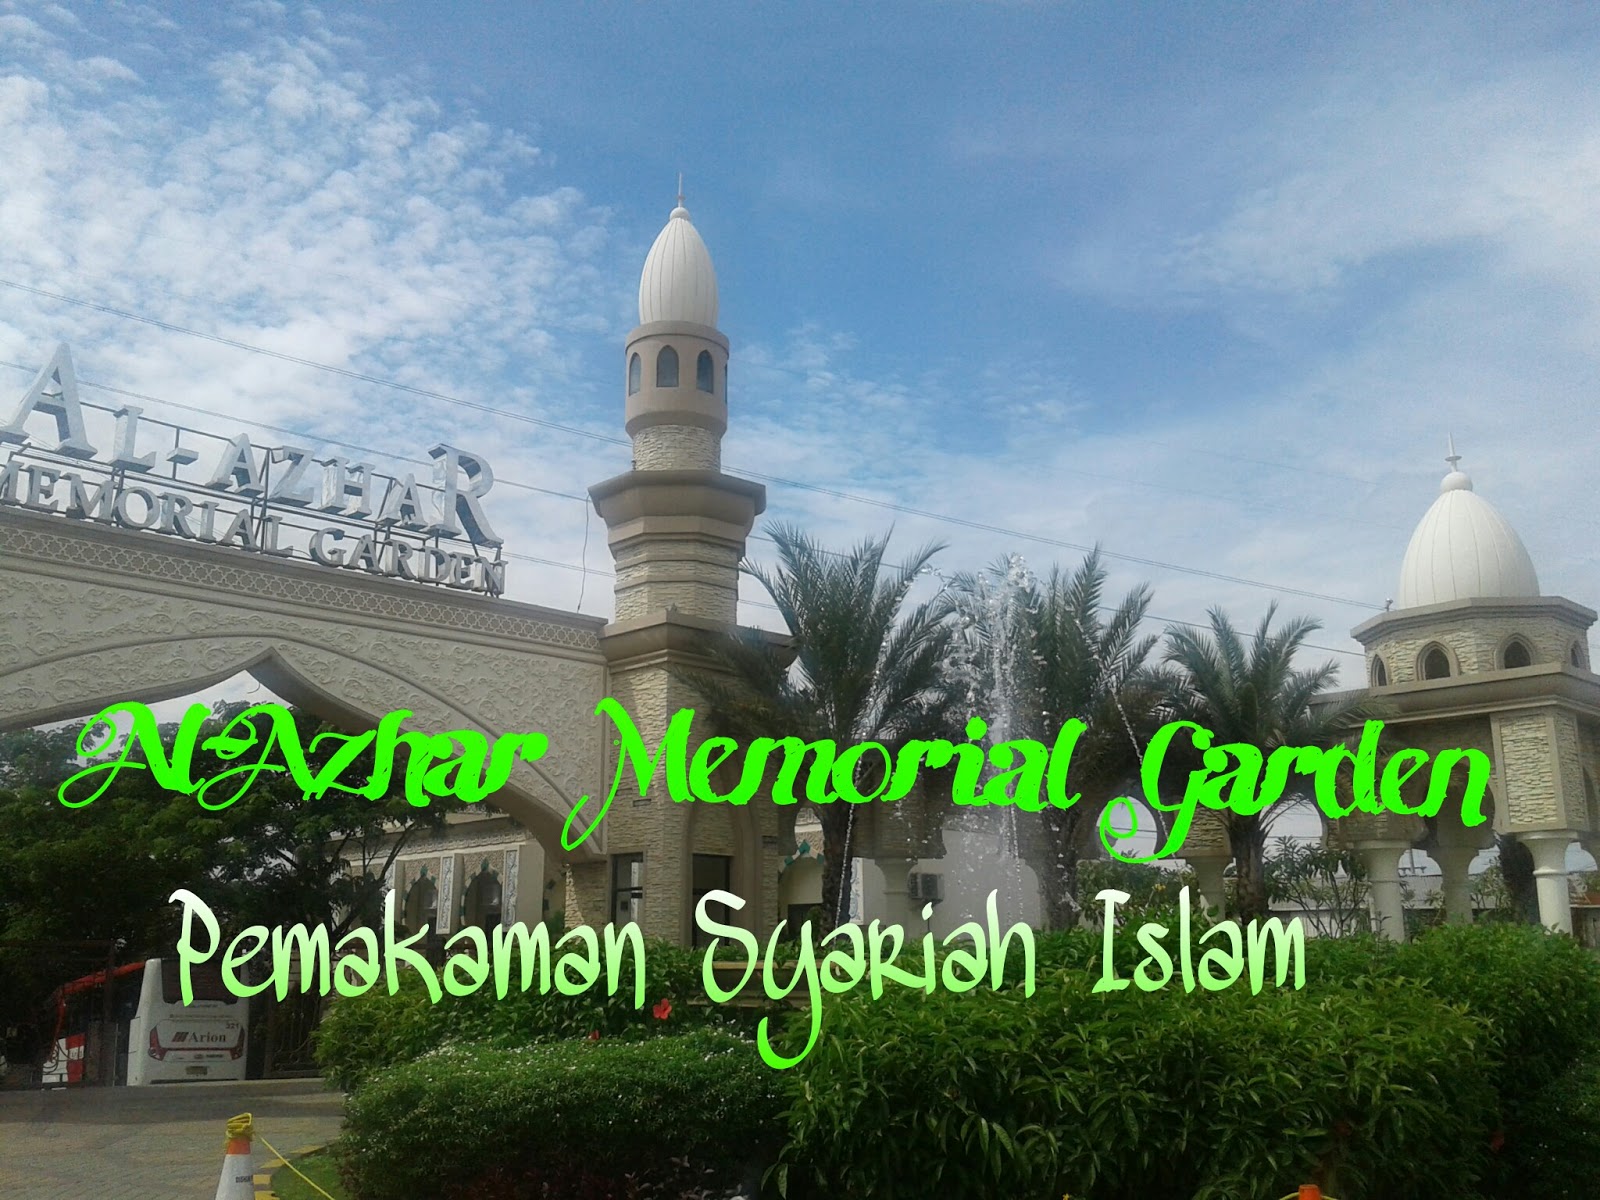 Al Azhar Memorial Garden Taman Pemakaman Dengan Syariat Islam